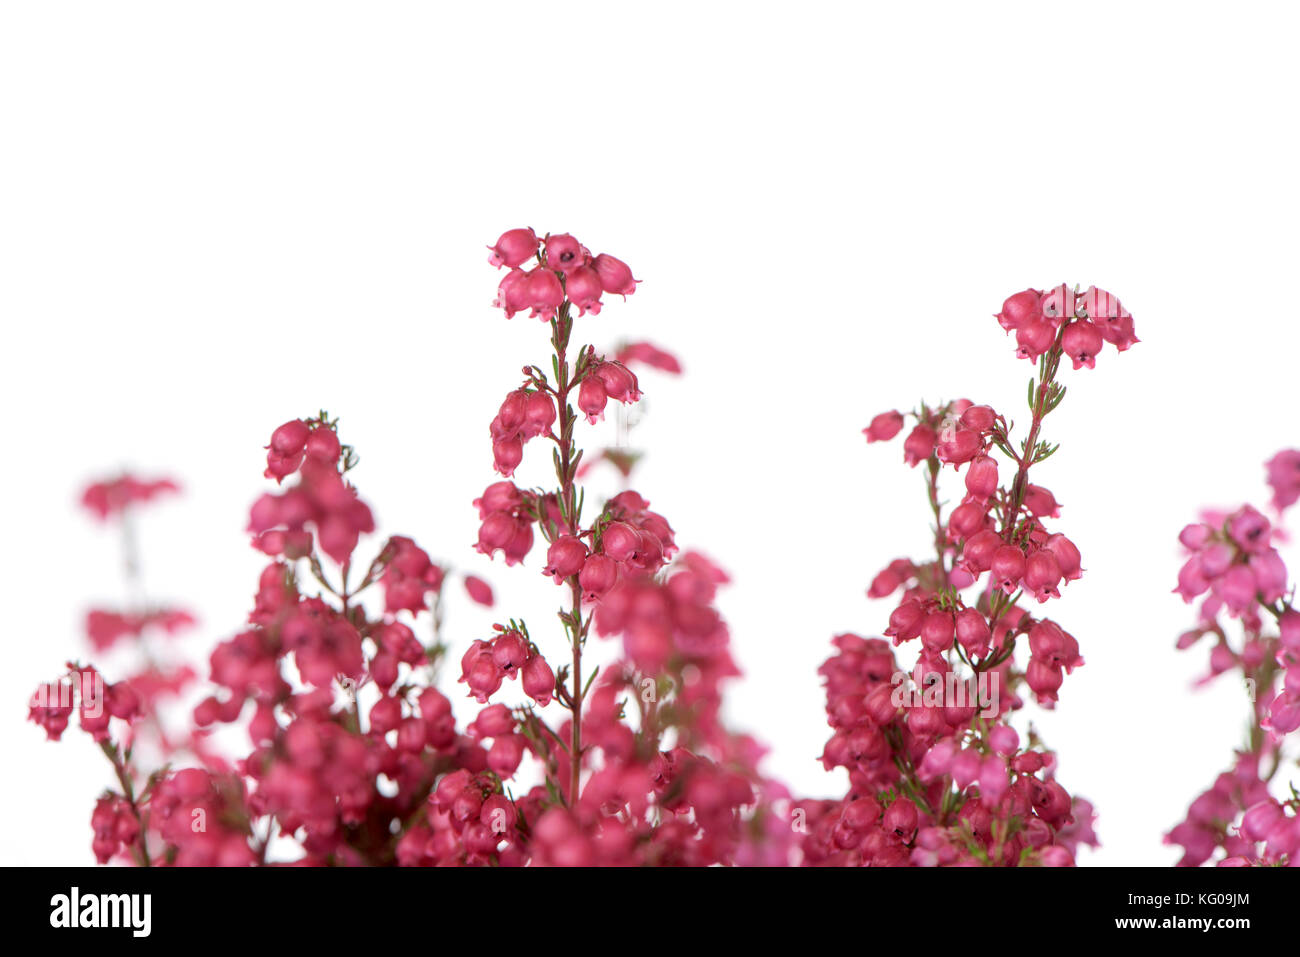 Primer plano de la rosa flores de una campana heather planta contra un fondo blanco. Foto de stock